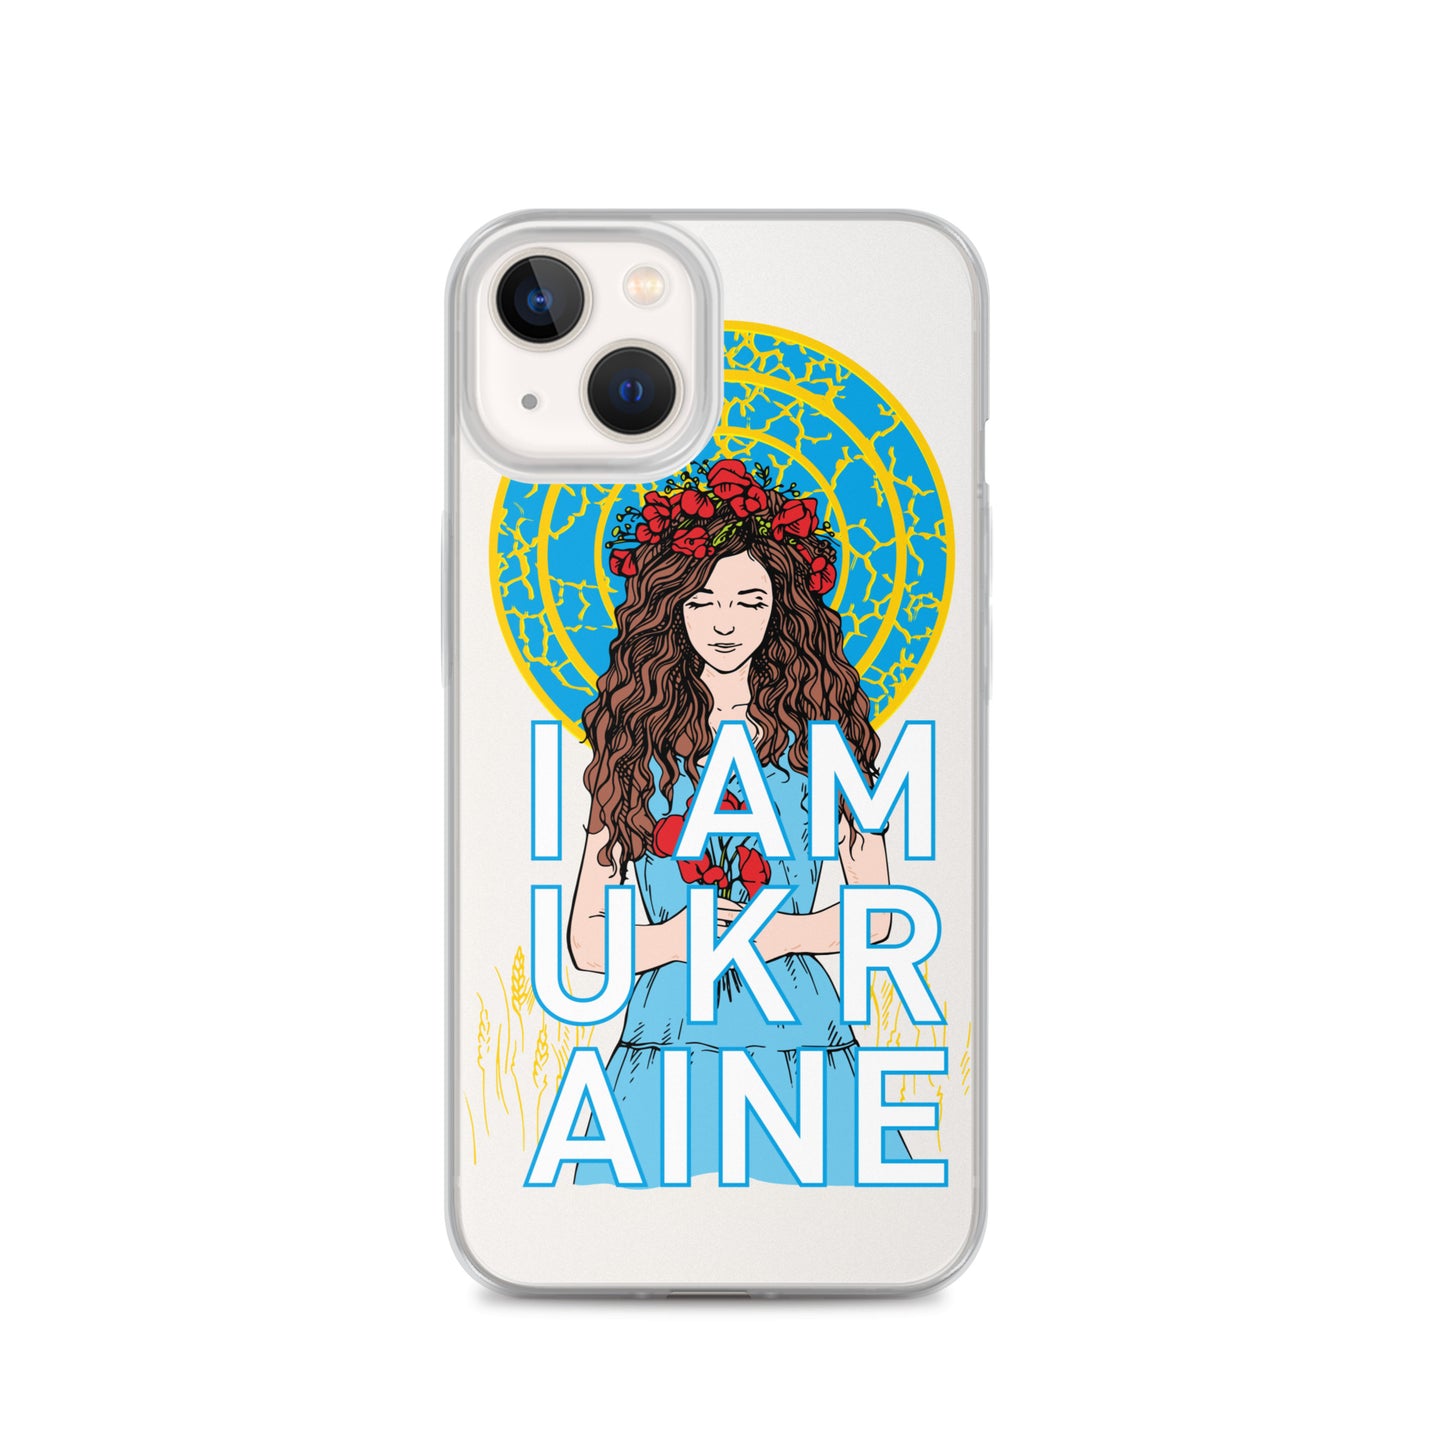 Ukraine iPhone Case